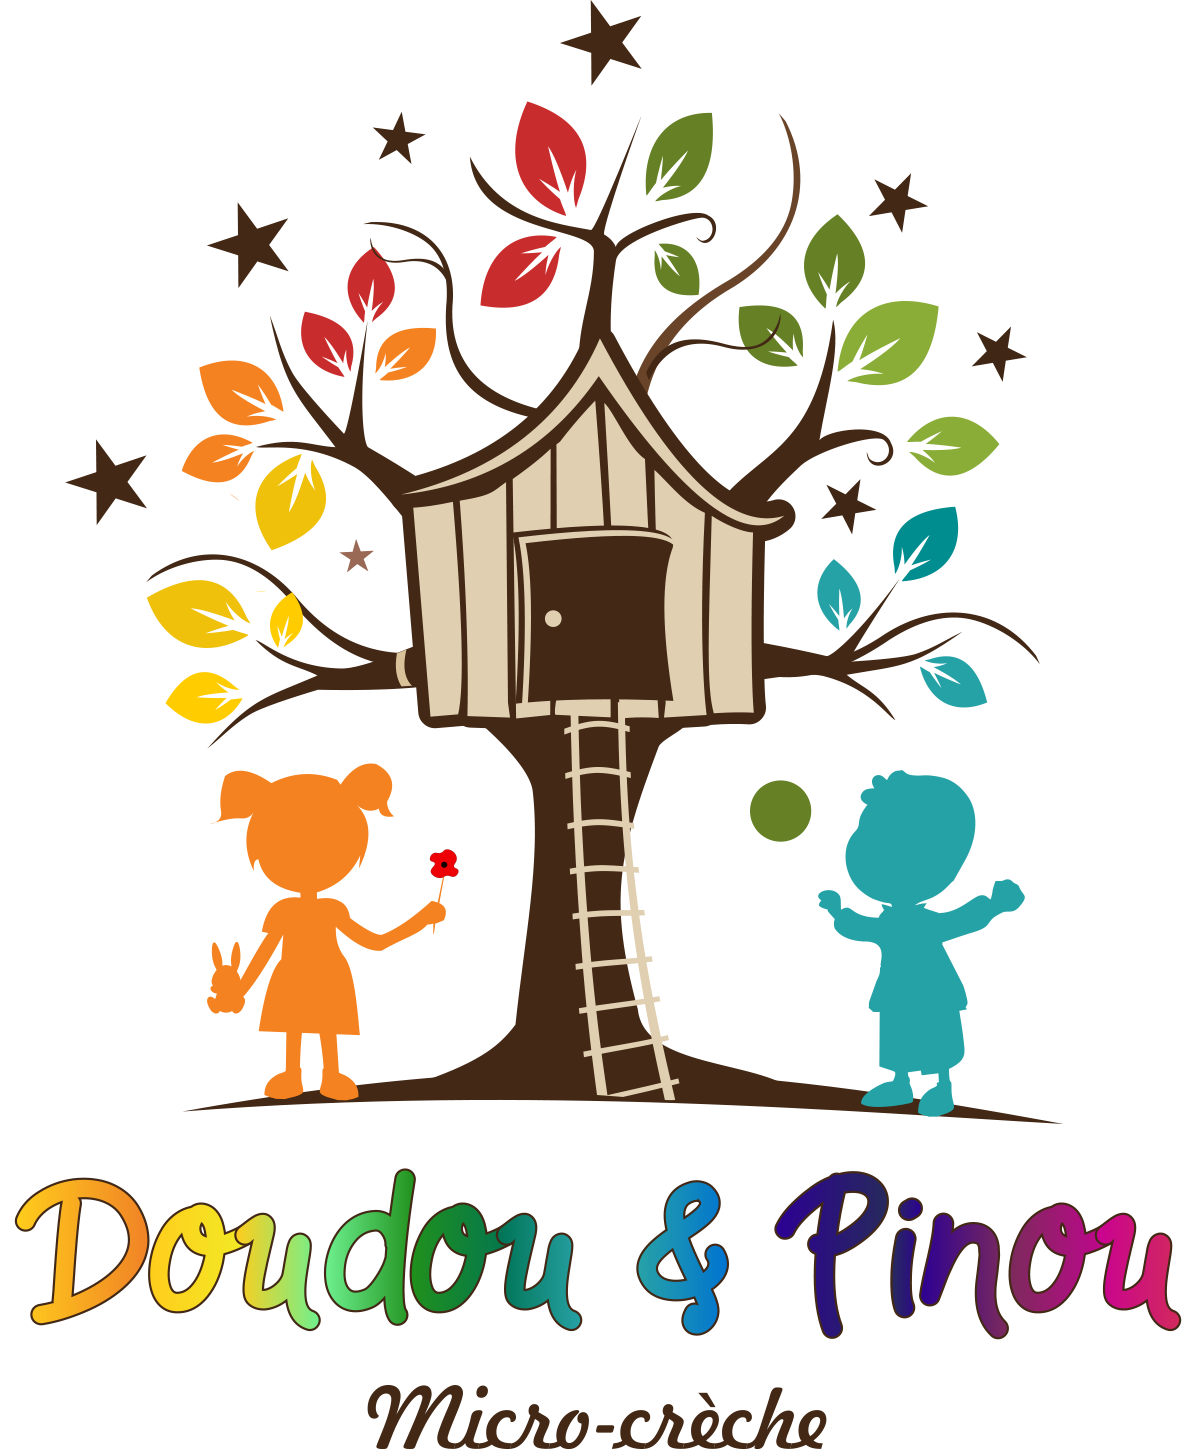 Logo de la structure doudou et pinou